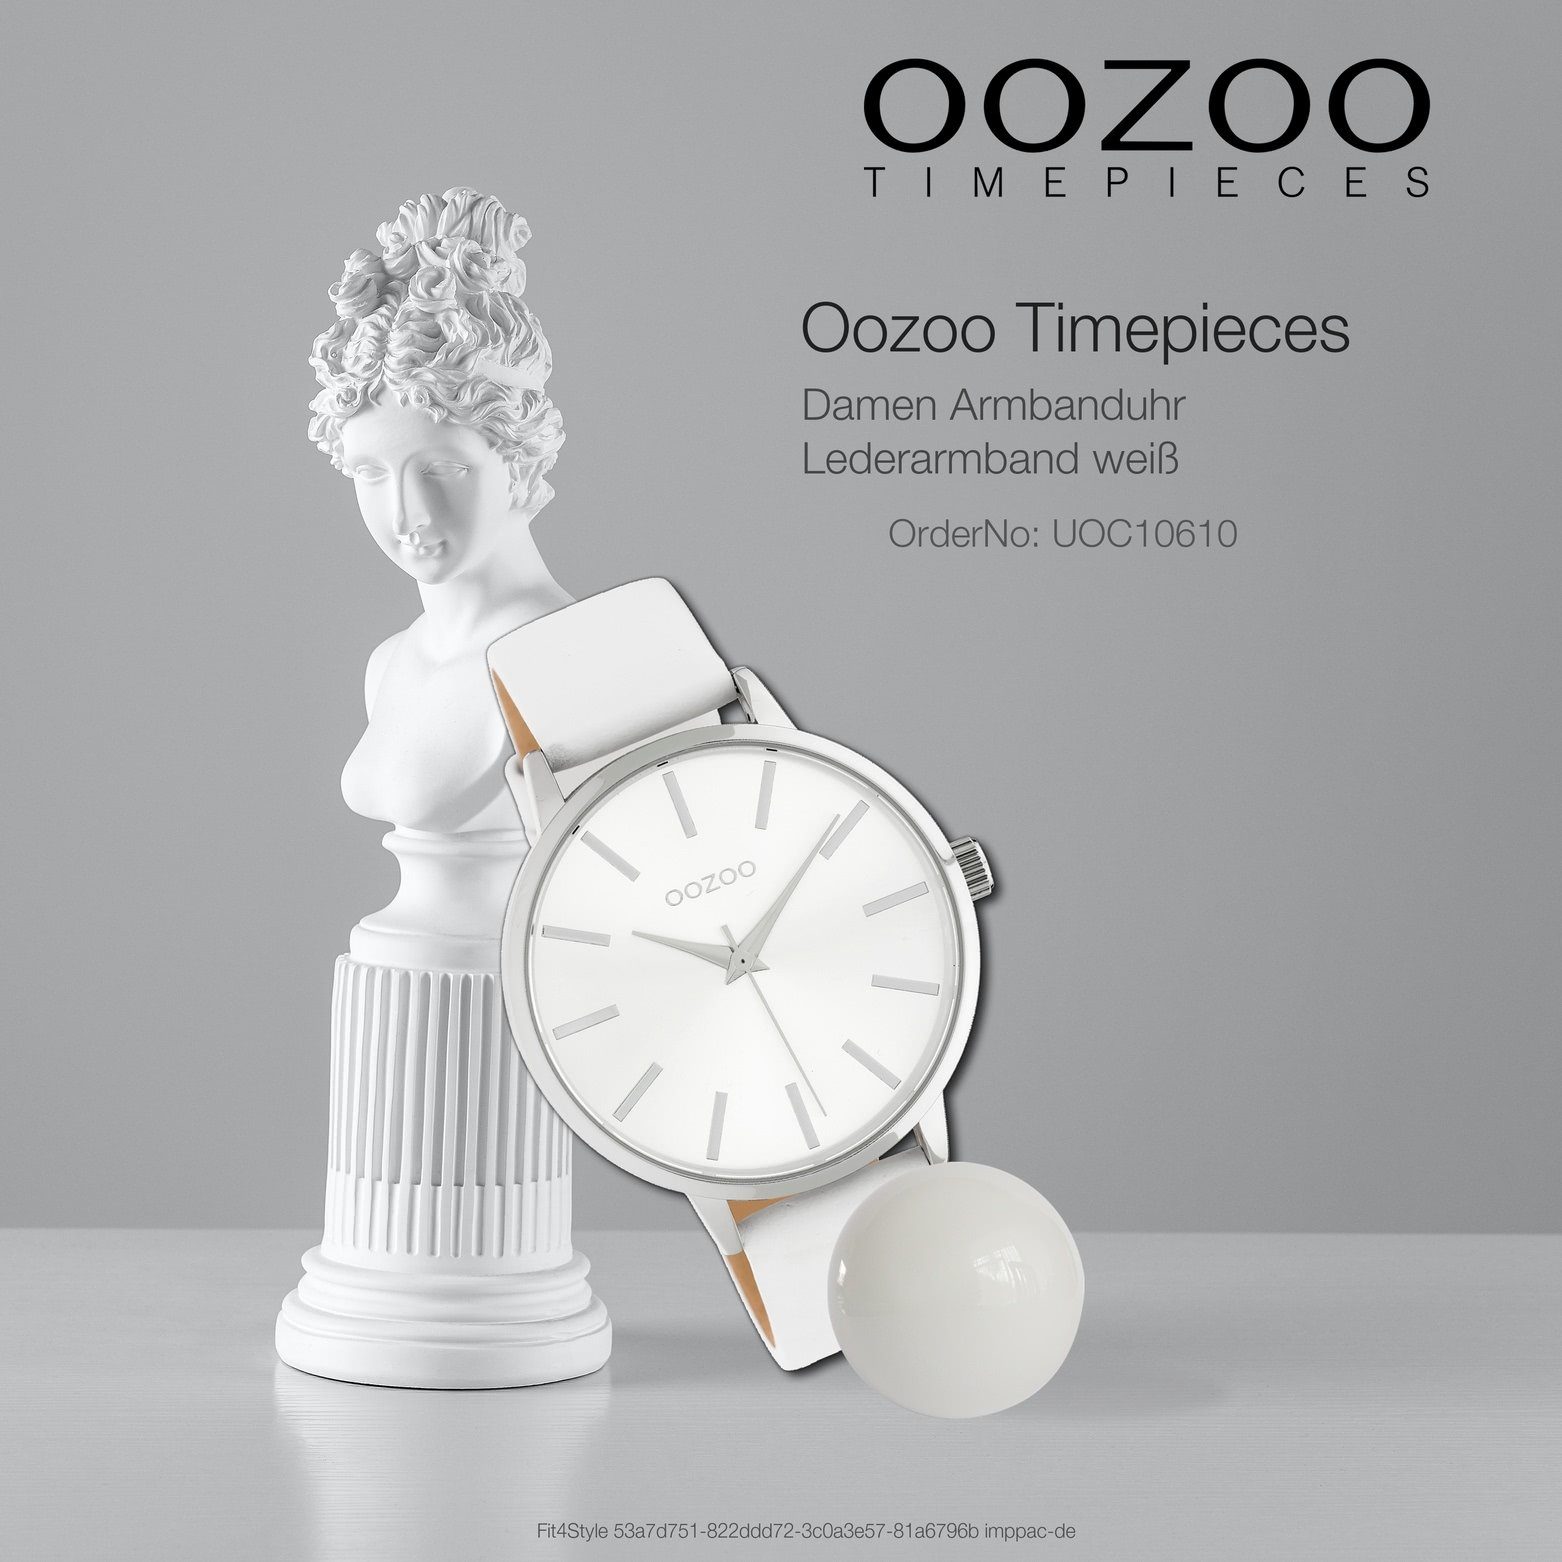 groß weiß, (ca. Lederarmband, rund, 42mm) Armbanduhr Damenuhr OOZOO Quarzuhr Oozoo Damen Fashion-Style